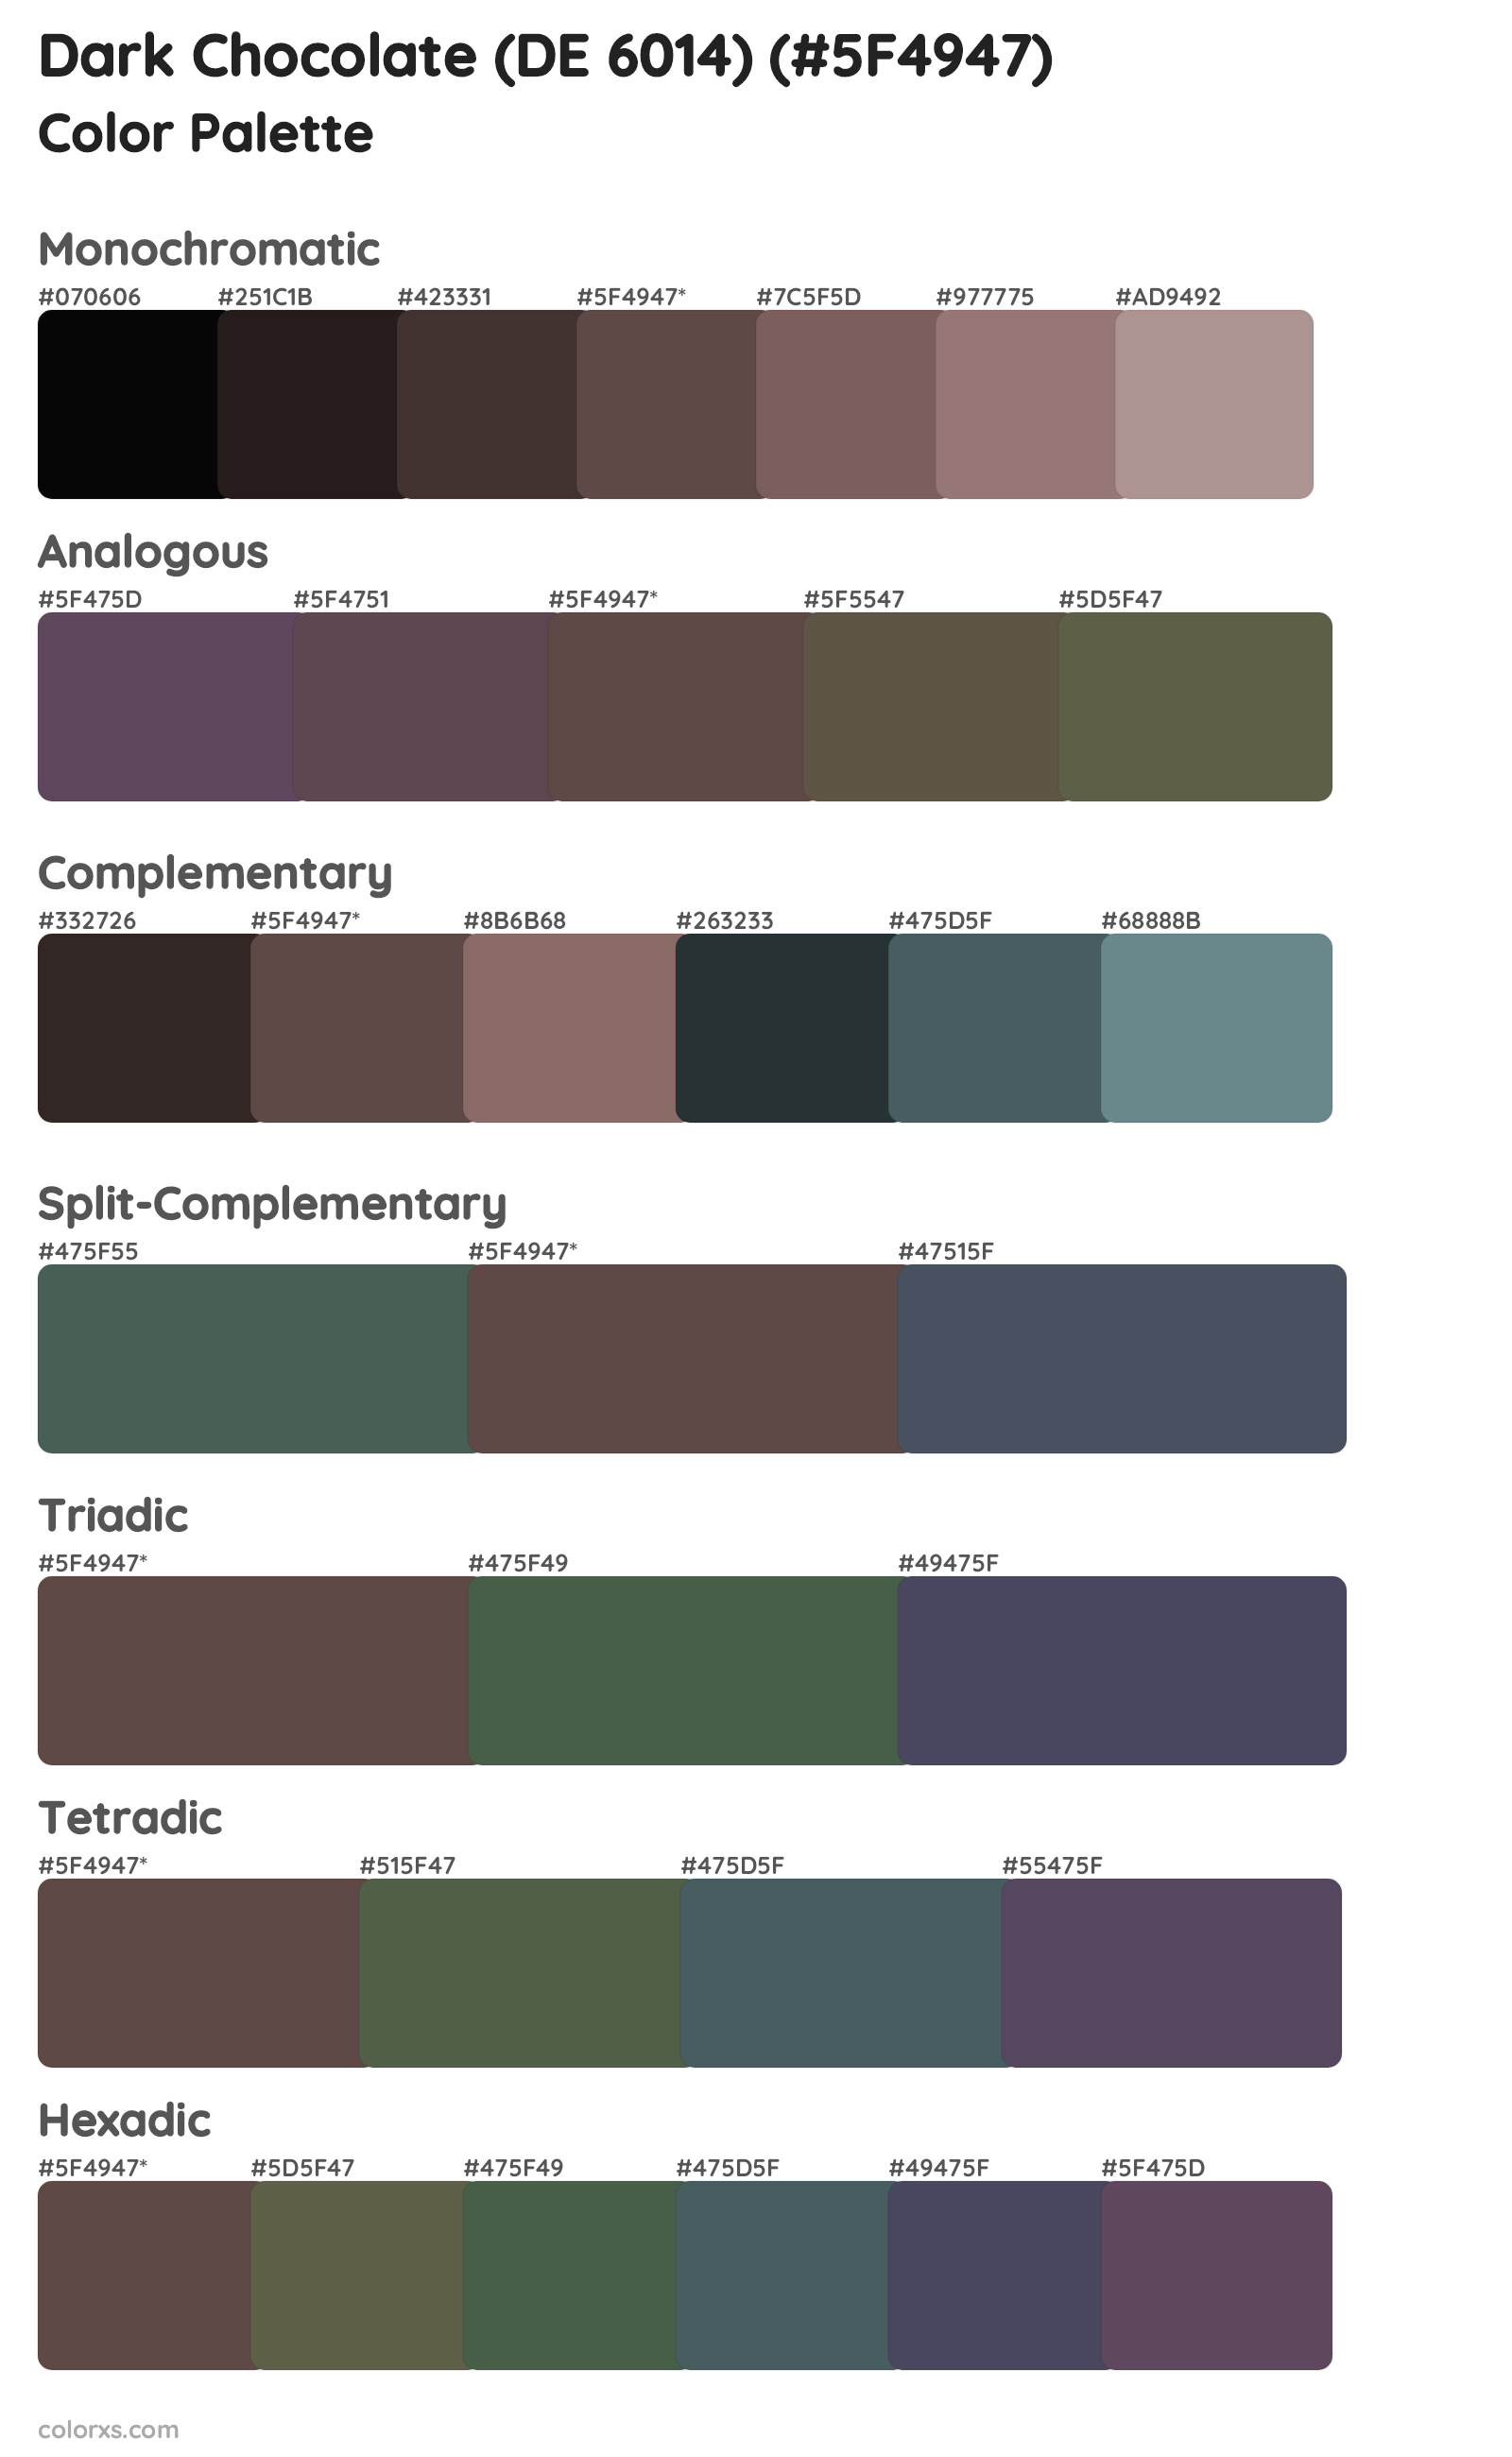 Dark Chocolate (DE 6014) Color Scheme Palettes